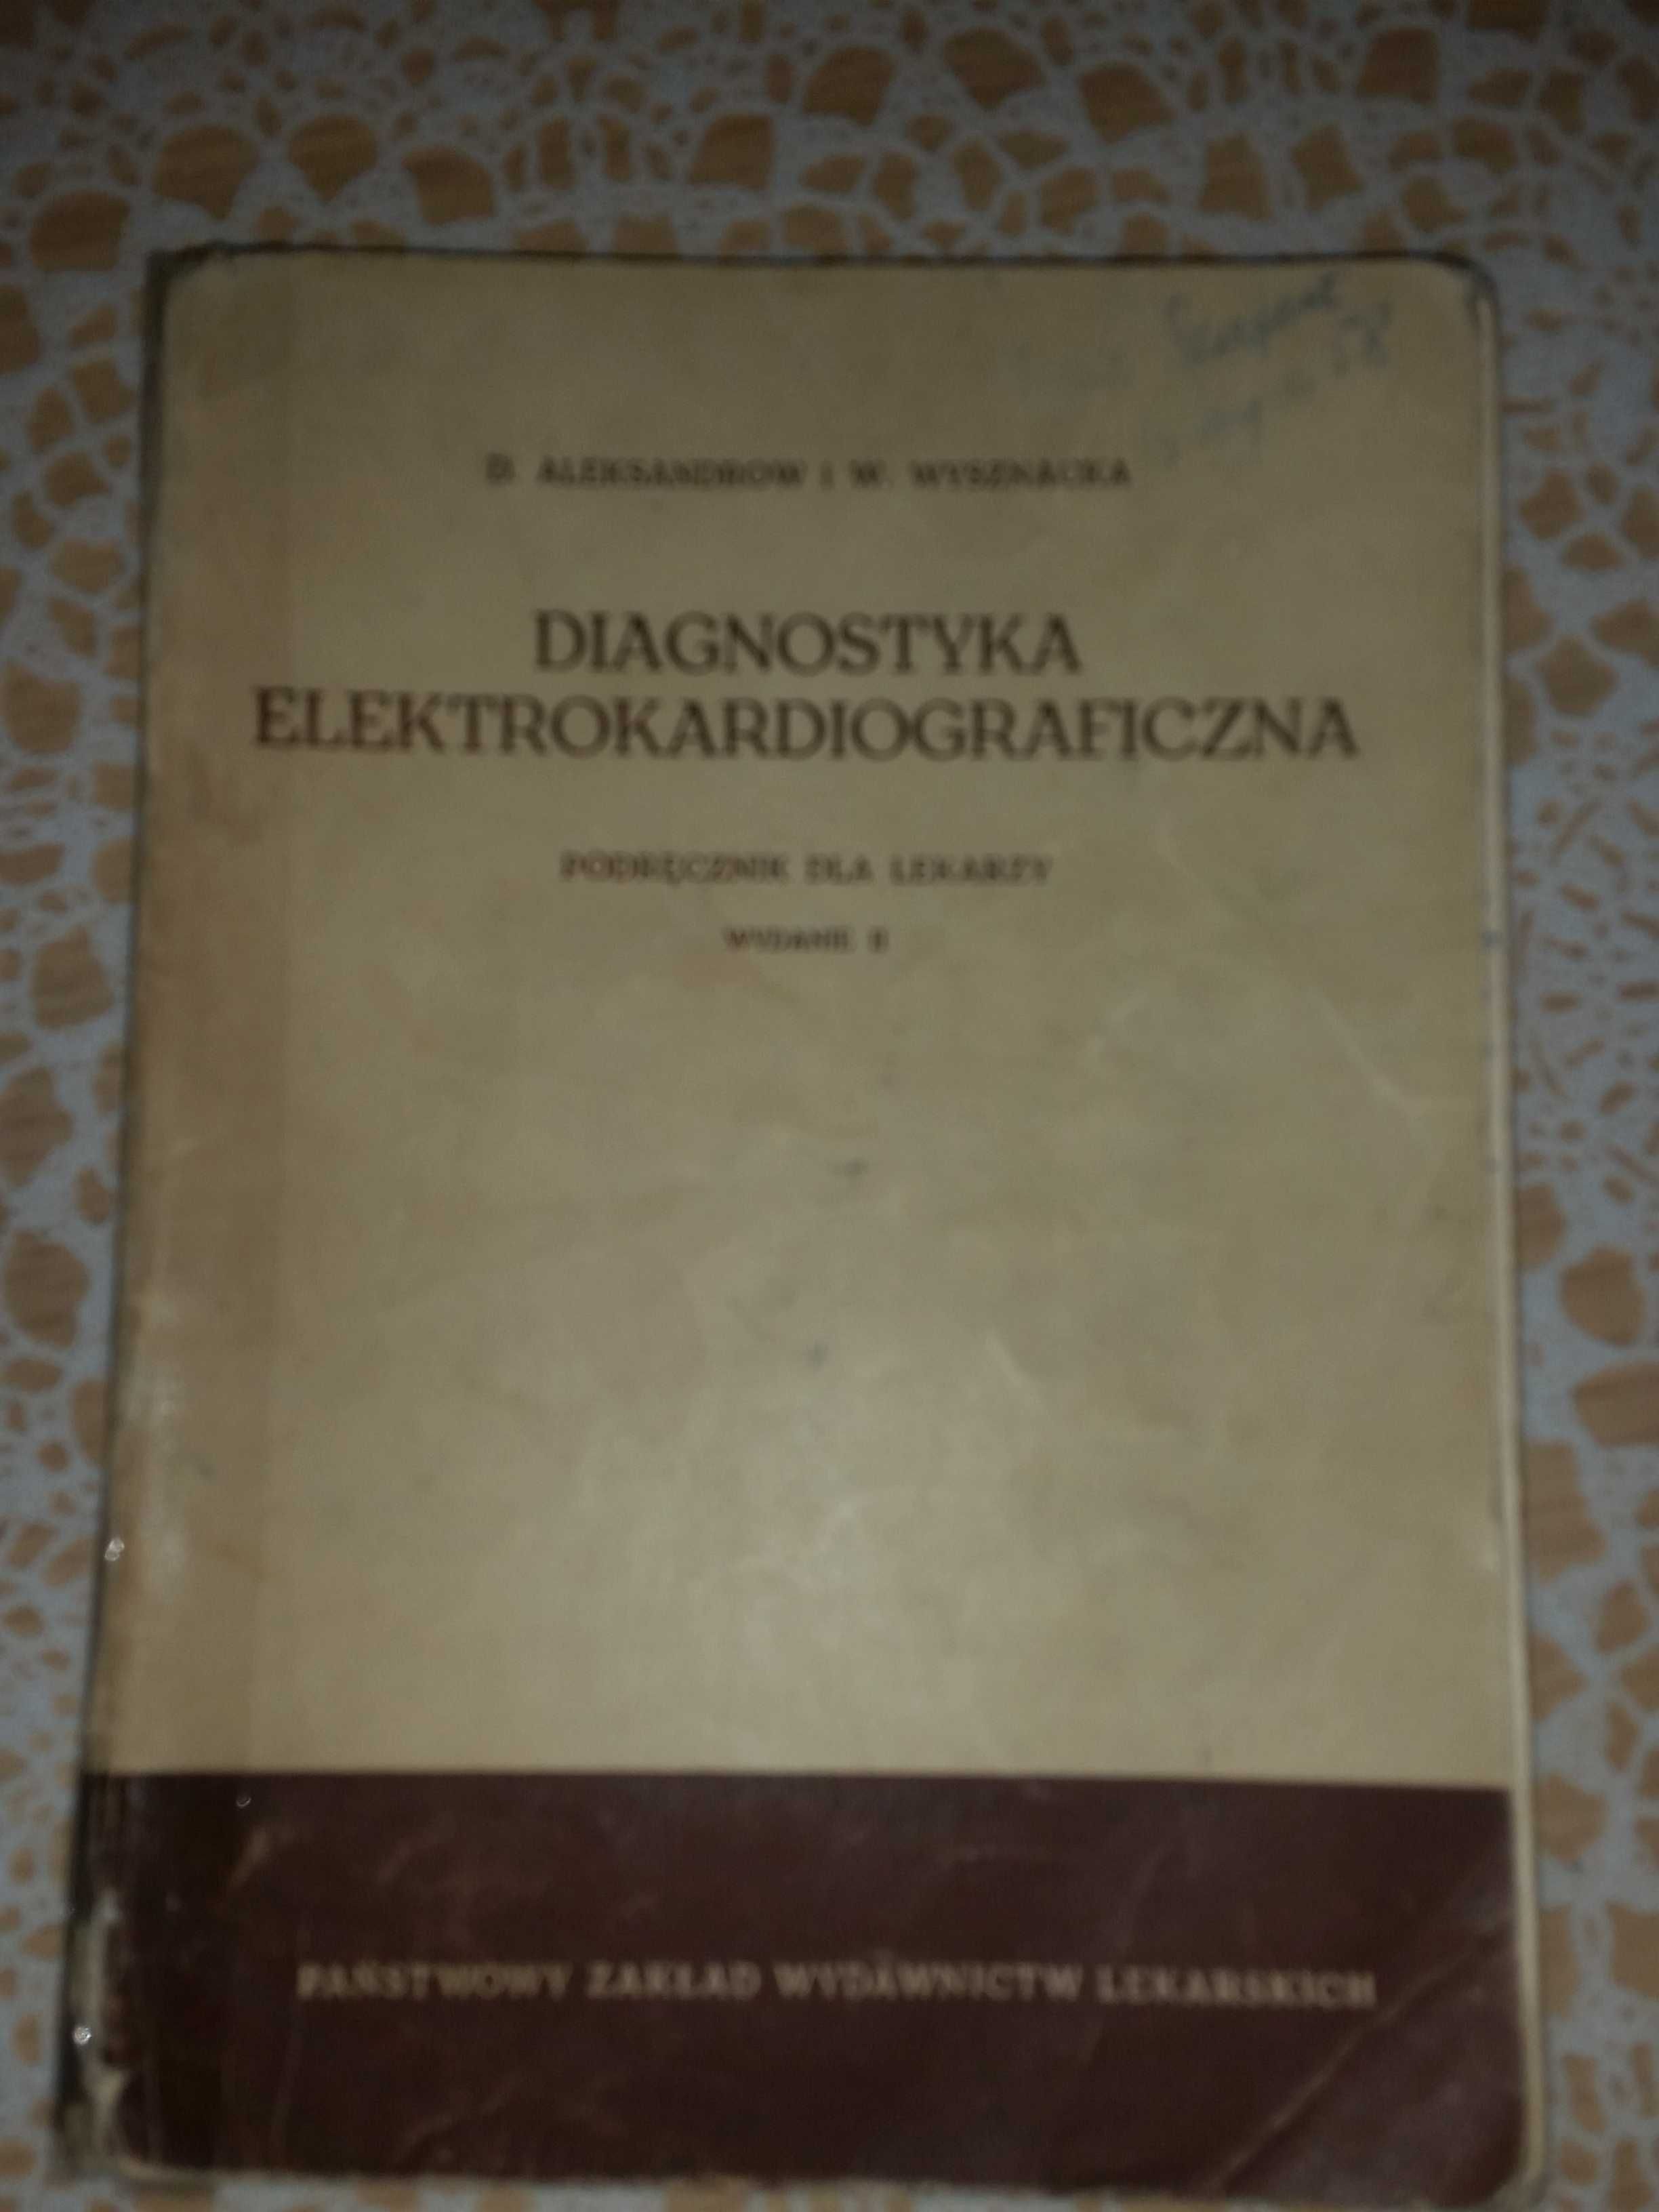 Diagnostyka elektrokardiograficzna  stara książka medyczna 1960